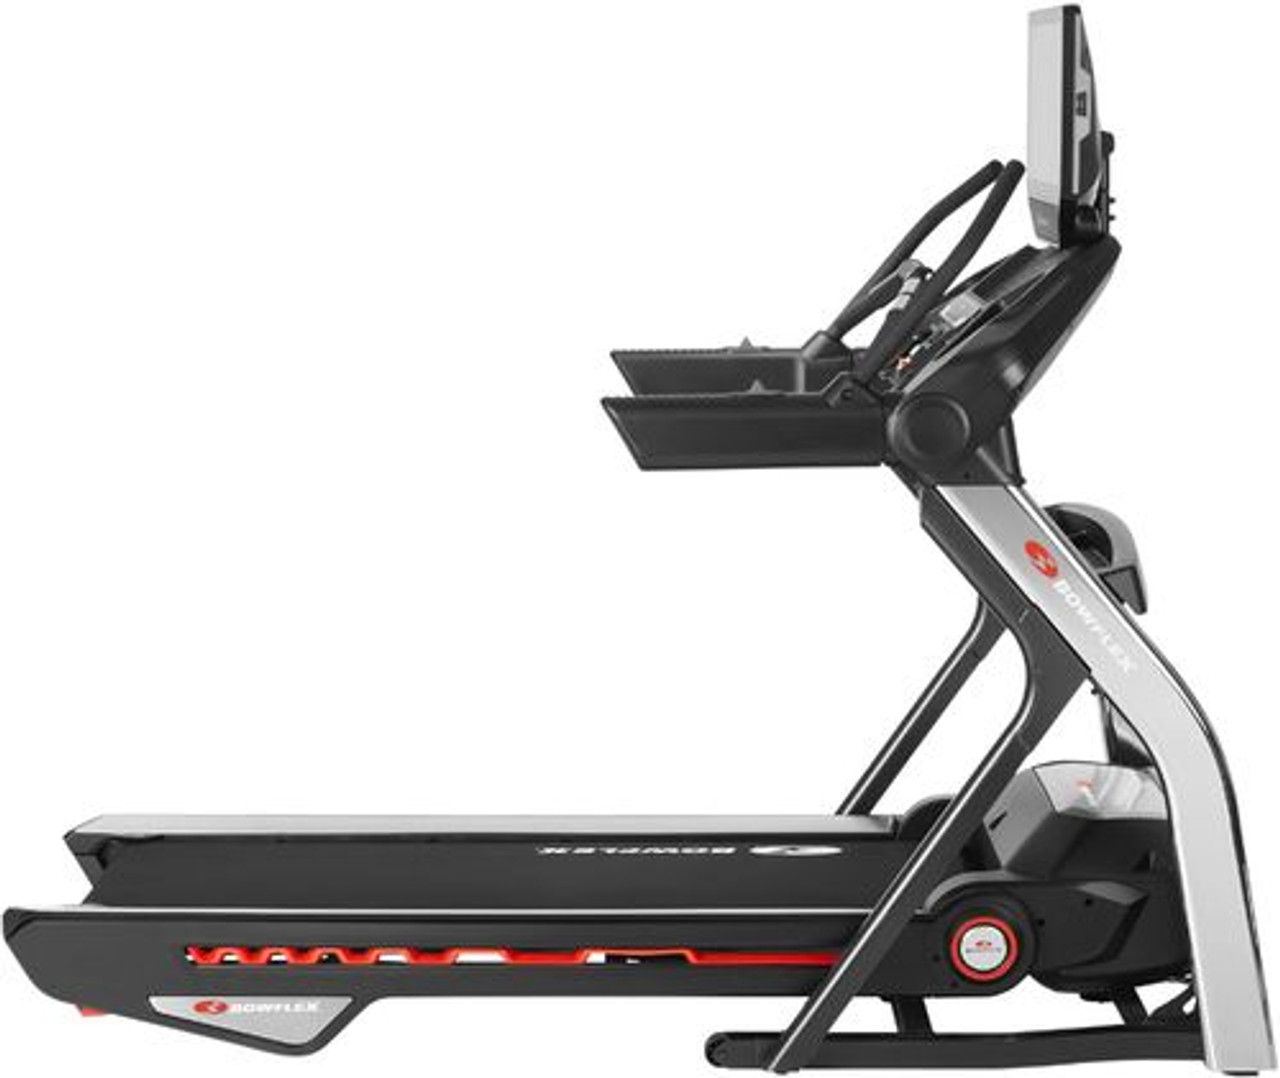 Bowflex Treadmill 22 - Black